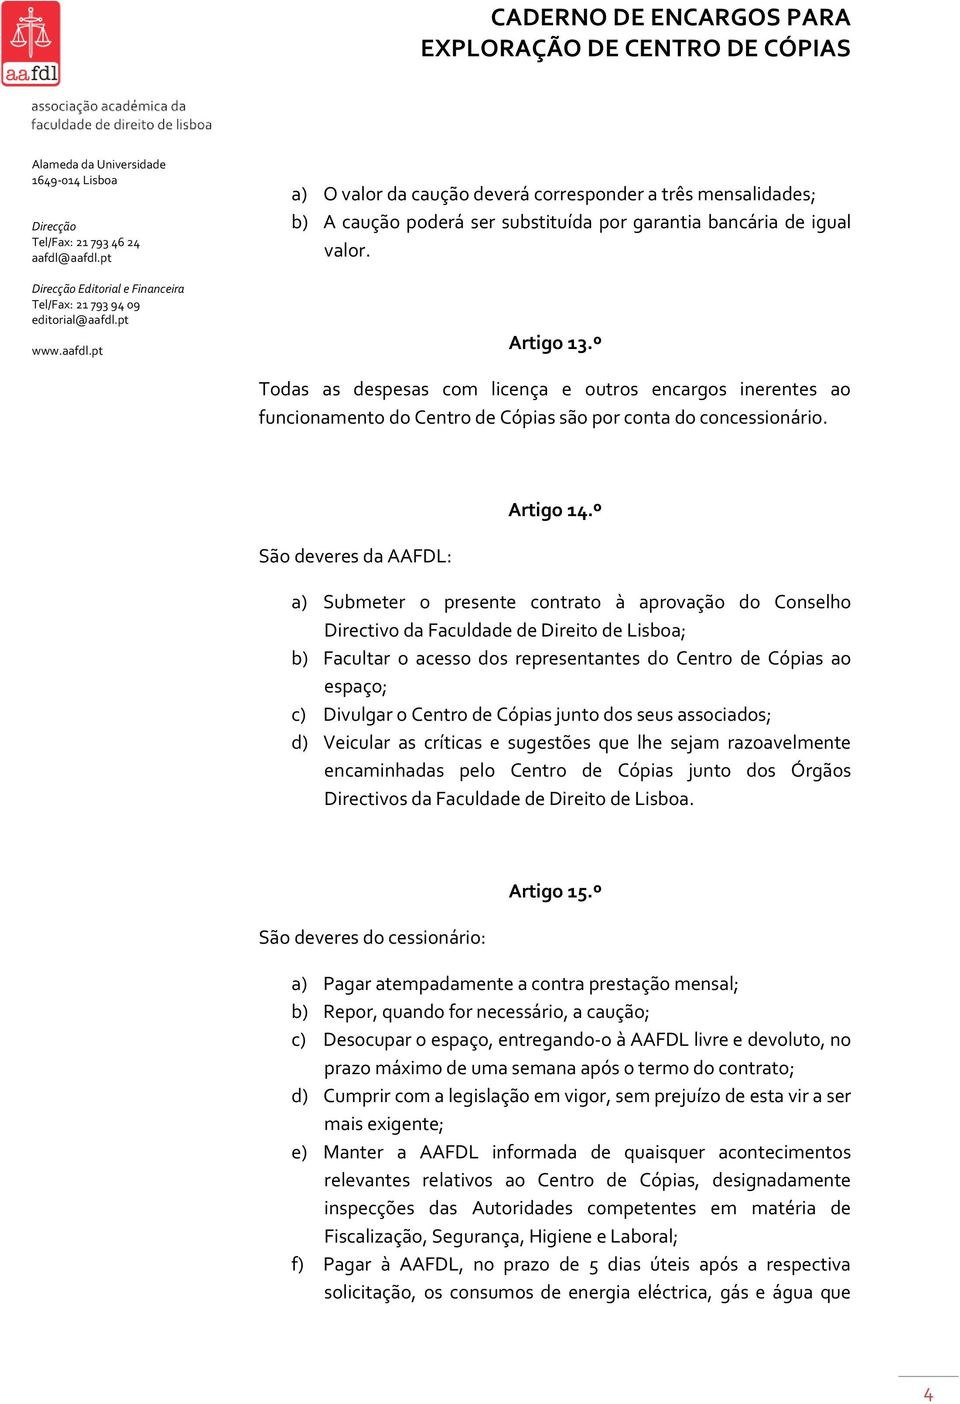 º a) Submeter o presente contrato à aprovação do Conselho Directivo da Faculdade de Direito de Lisboa; b) Facultar o acesso dos representantes do Centro de Cópias ao espaço; c) Divulgar o Centro de